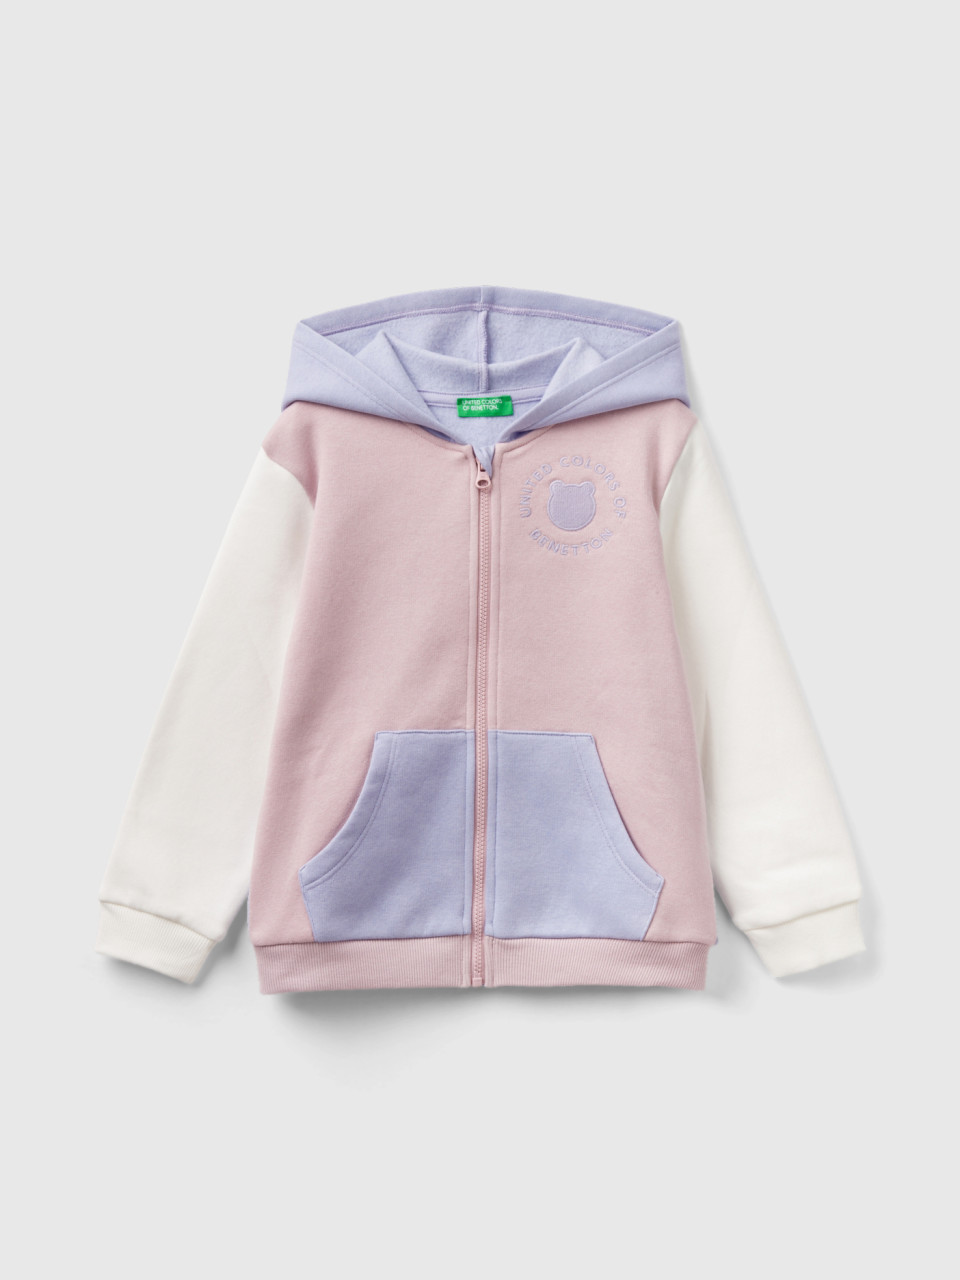 Benetton, Zip-up Sweatshirt In Cotton Blend, Multi-color, Kids